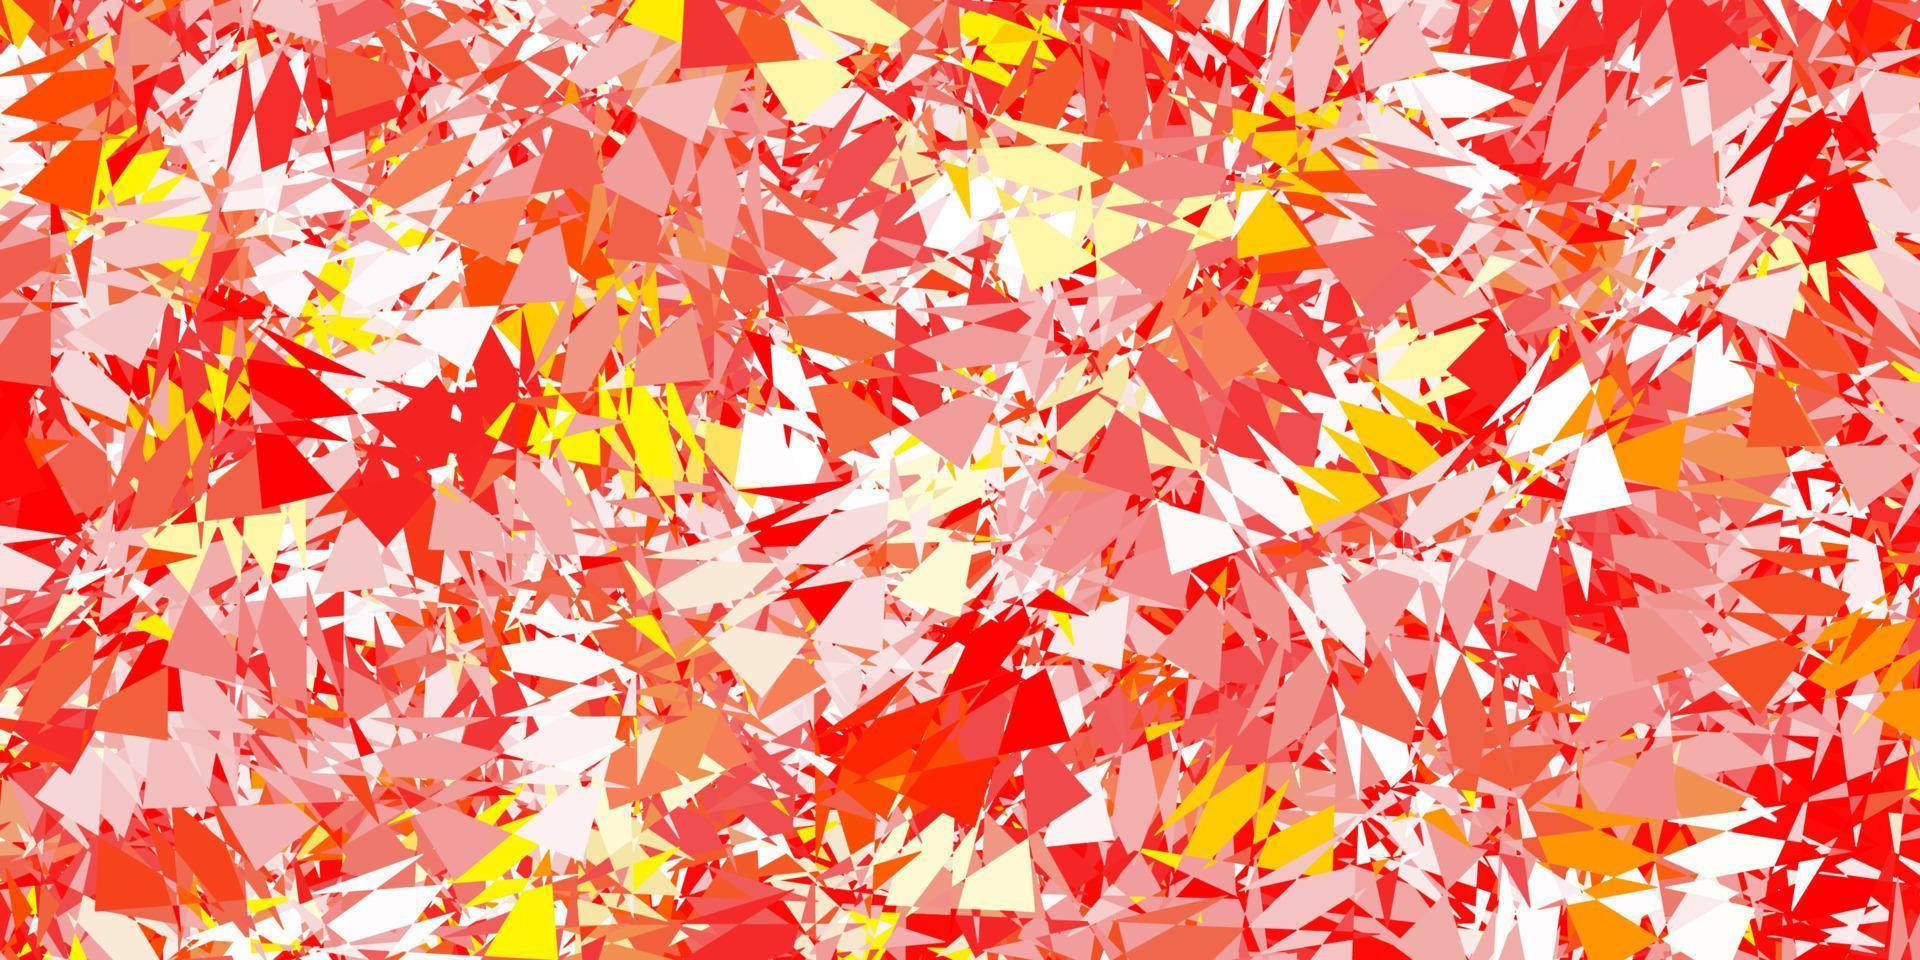 plantilla de vector rojo, amarillo claro con formas triangulares.